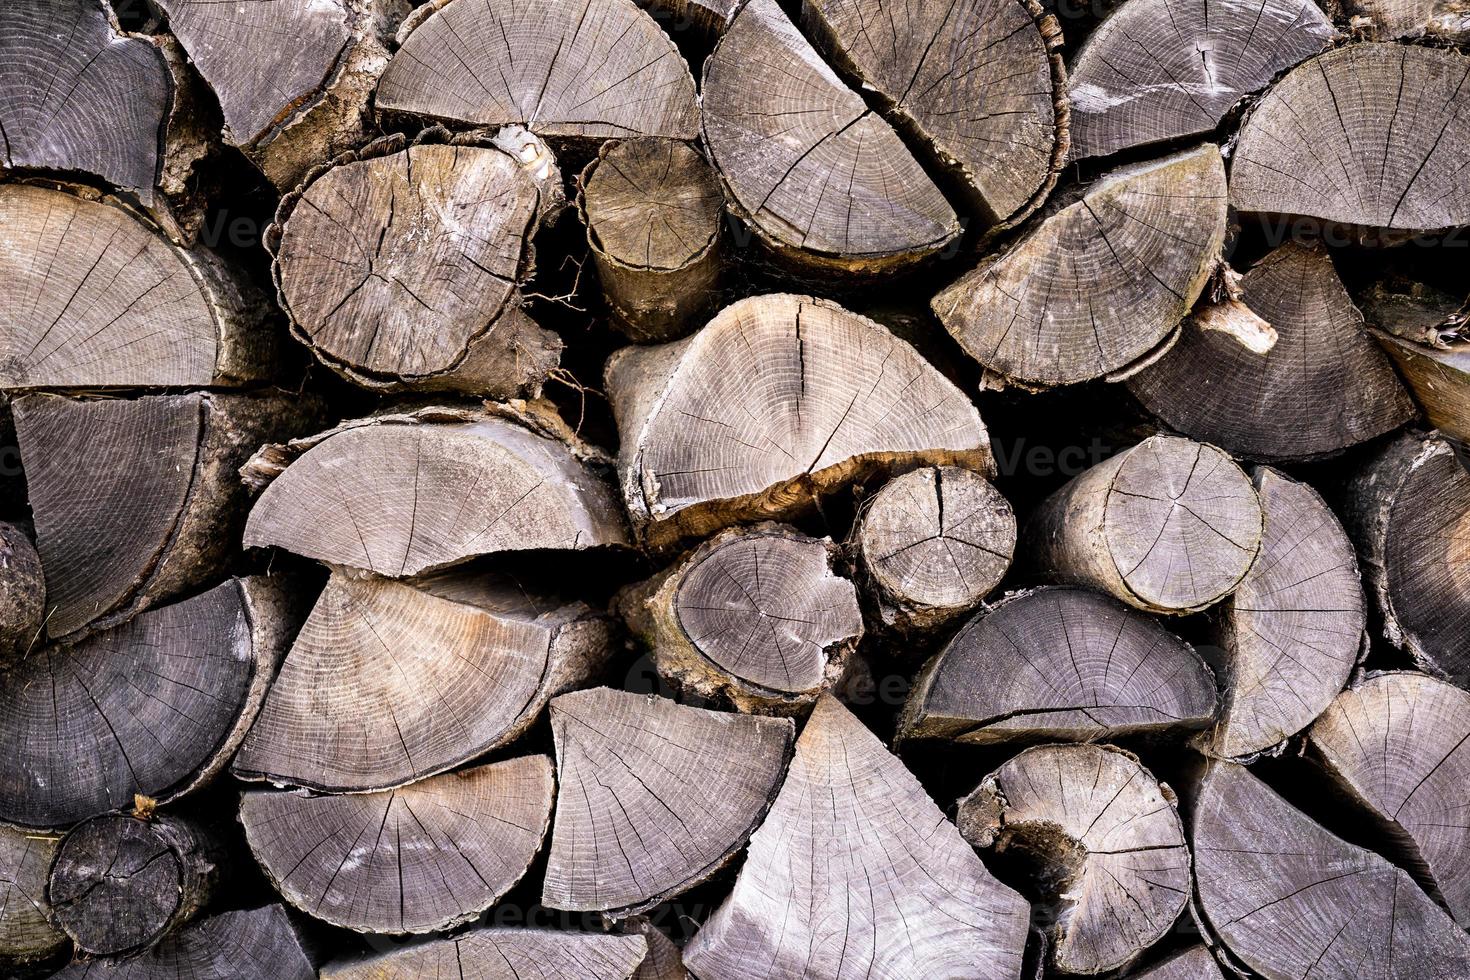 lenha lindamente empilhada, madeira natural para queimar no forno foto